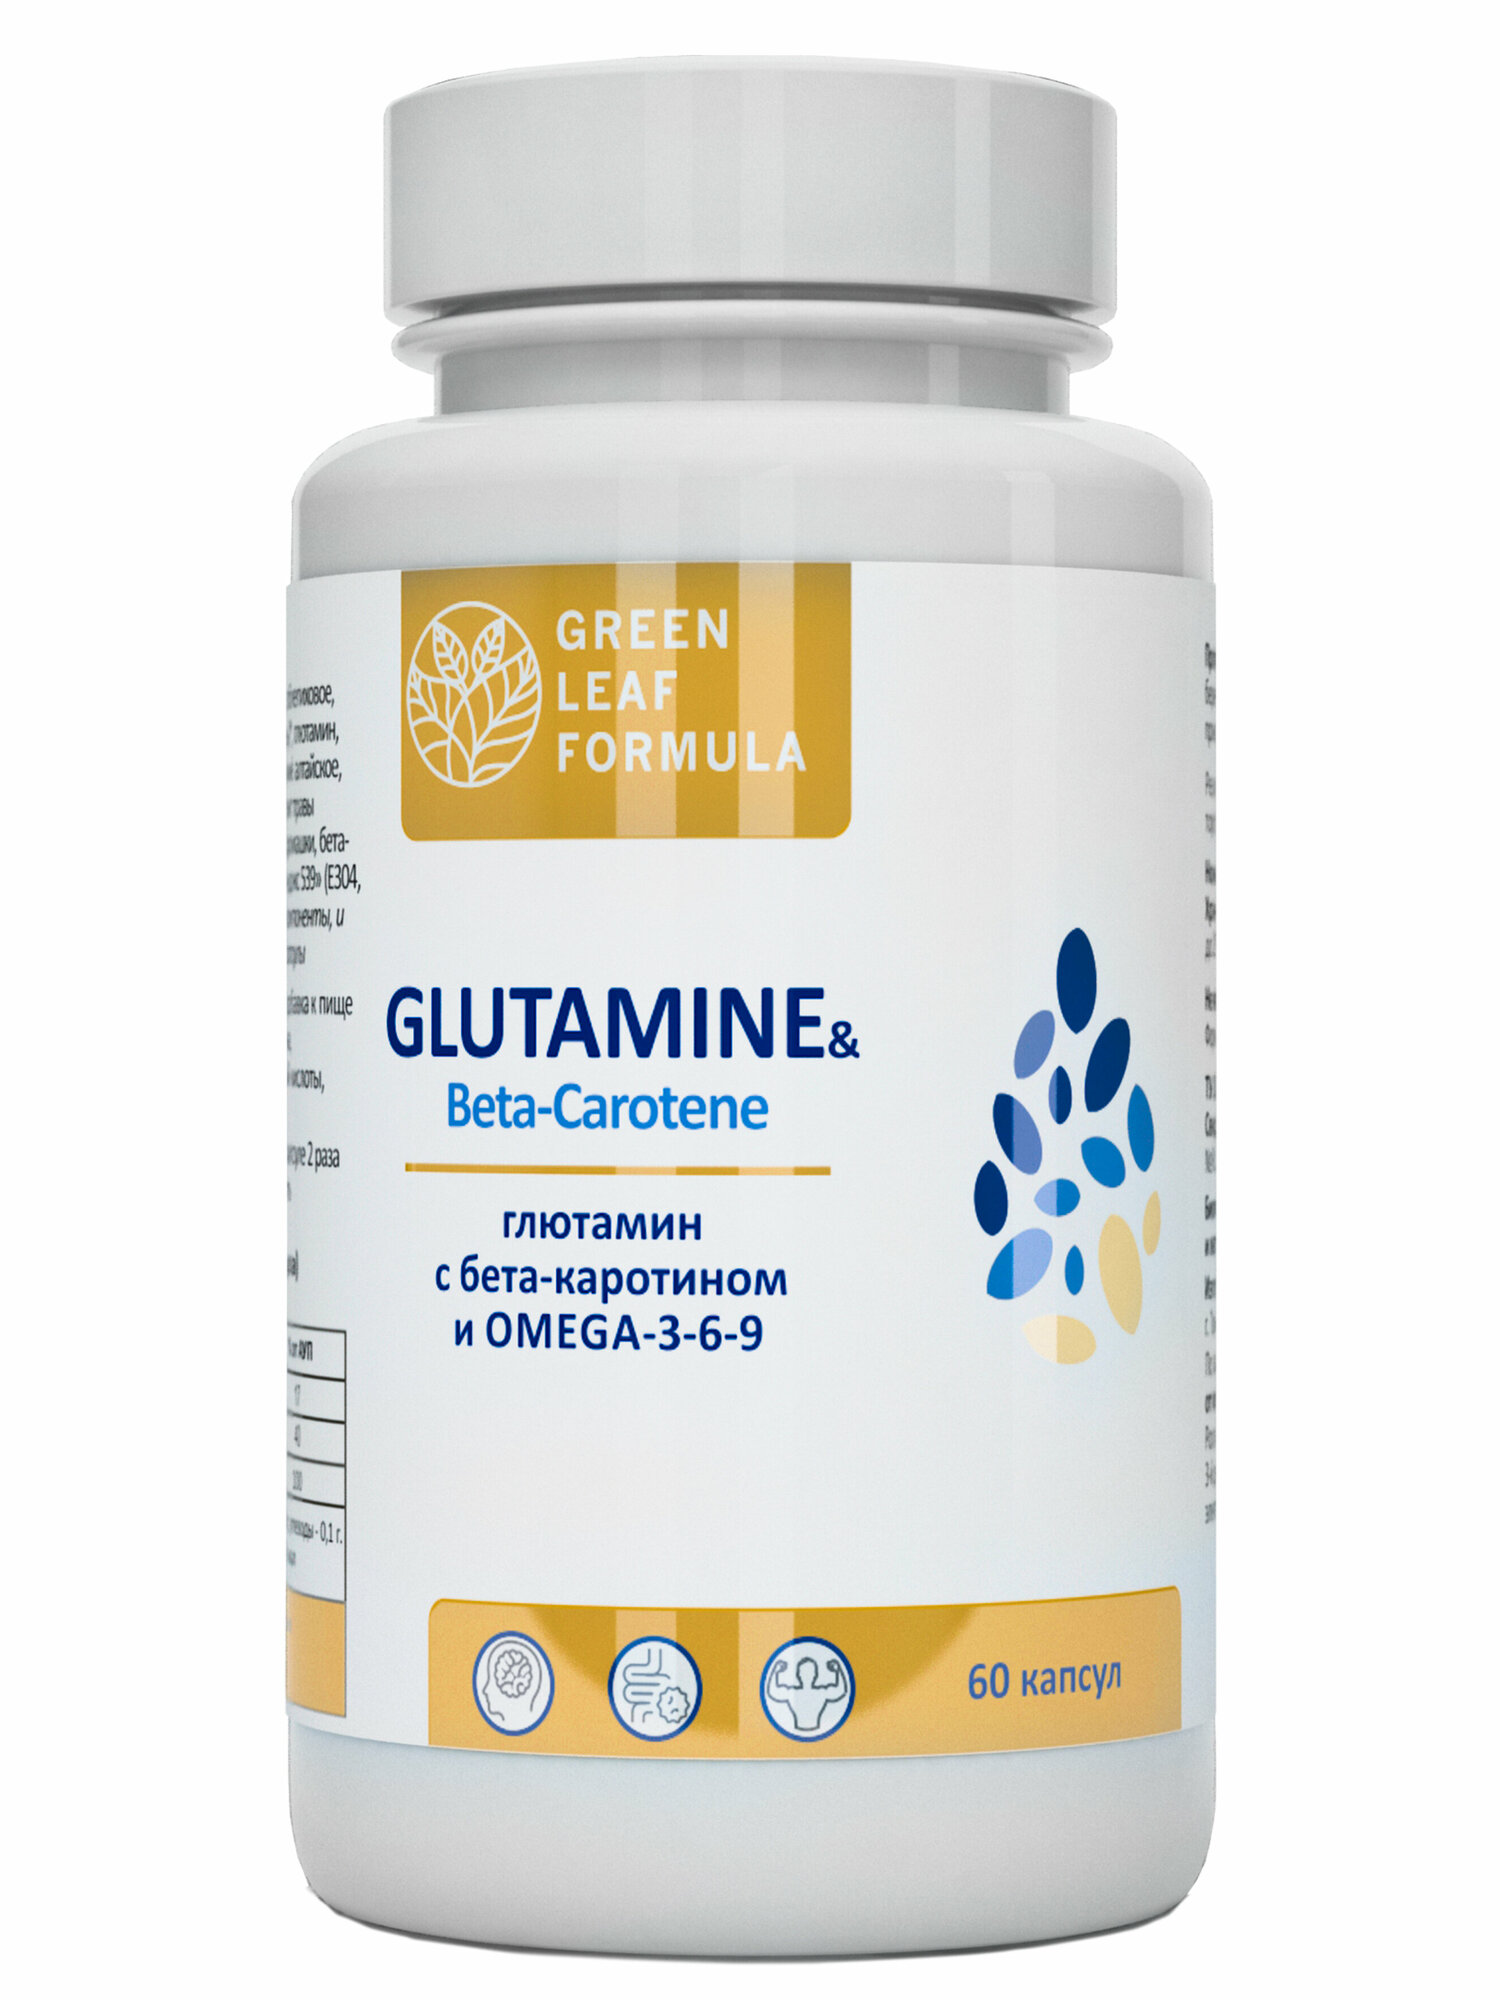 Аминокислота Глютамин и бета-каротин, спортпит, для набора мышечной массы, витамины для мозга